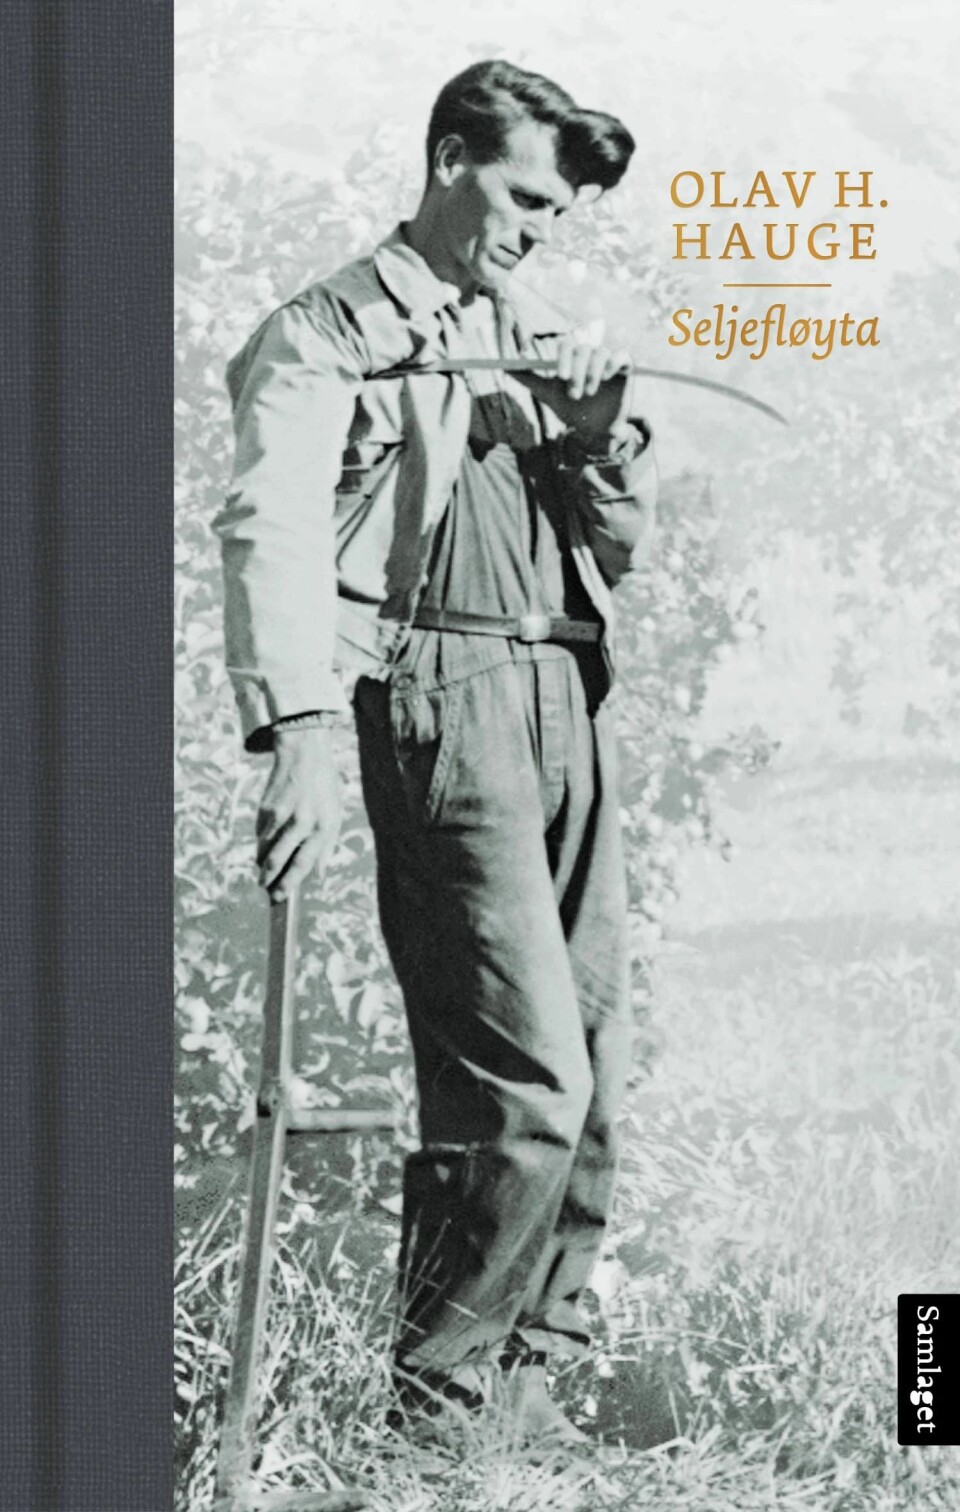 Omslag av diktsamlinga «Seljefløyta», utgitt av Samlaget 2018, med dikt henta frå det opphavleg refuserte diktmanuset frå 1930-talet, eit manus som er bevart ved Manuskript- og librarsamlingen ved UBB.